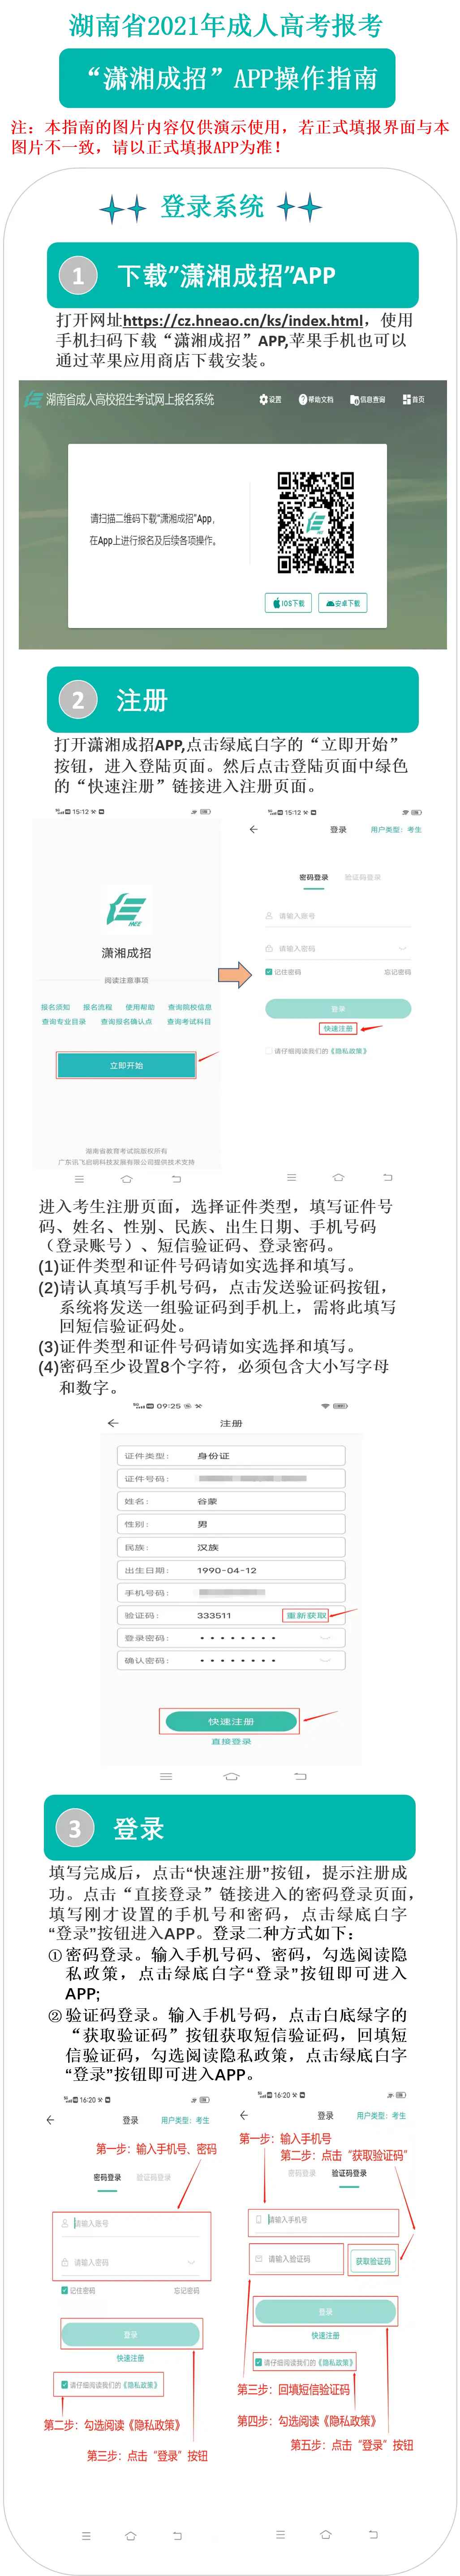 2021年湖南成人高考“潇湘成招”APP网上报名操作指南1